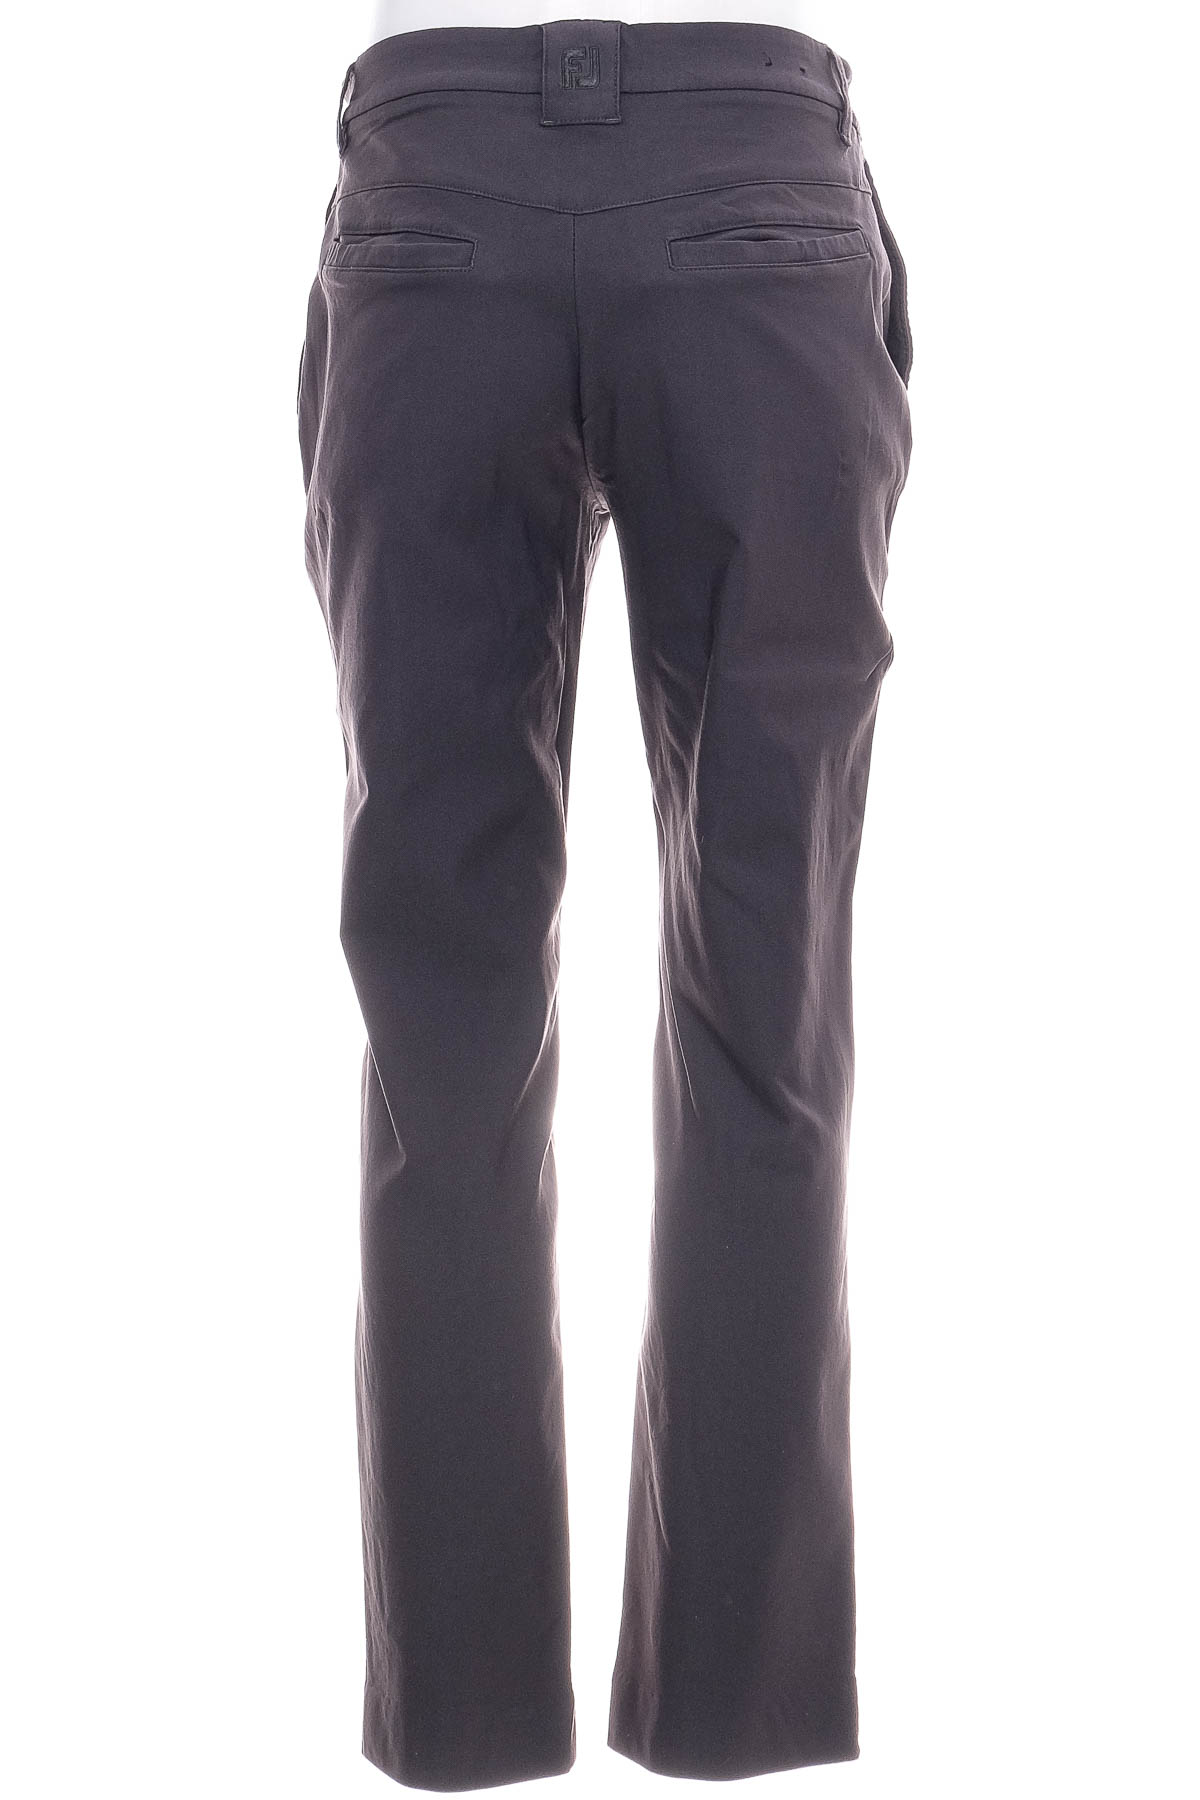 Pantalon pentru bărbați - FJ - 0